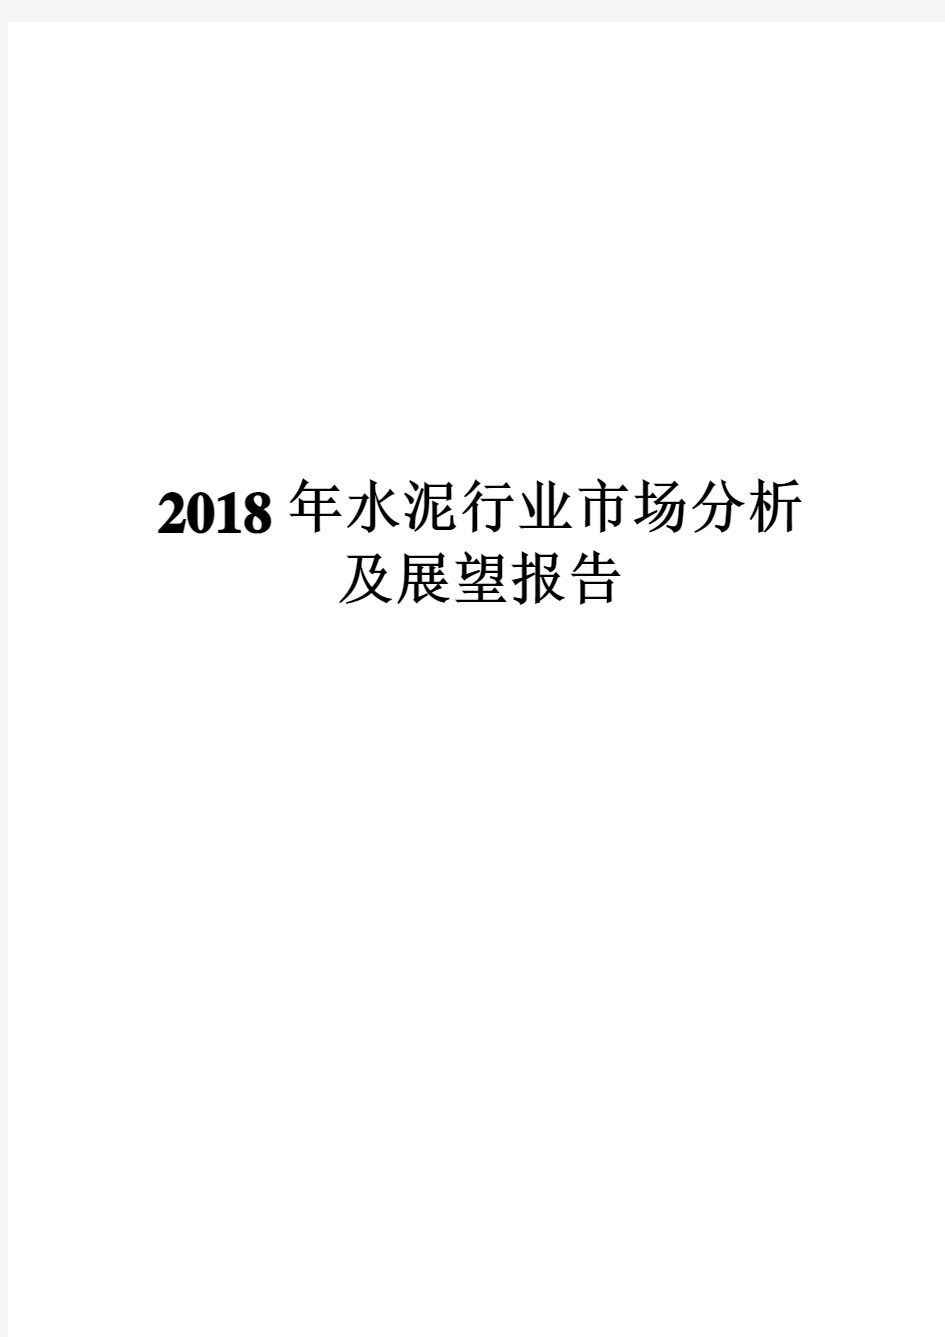 2018年水泥行业市场分析及展望报告